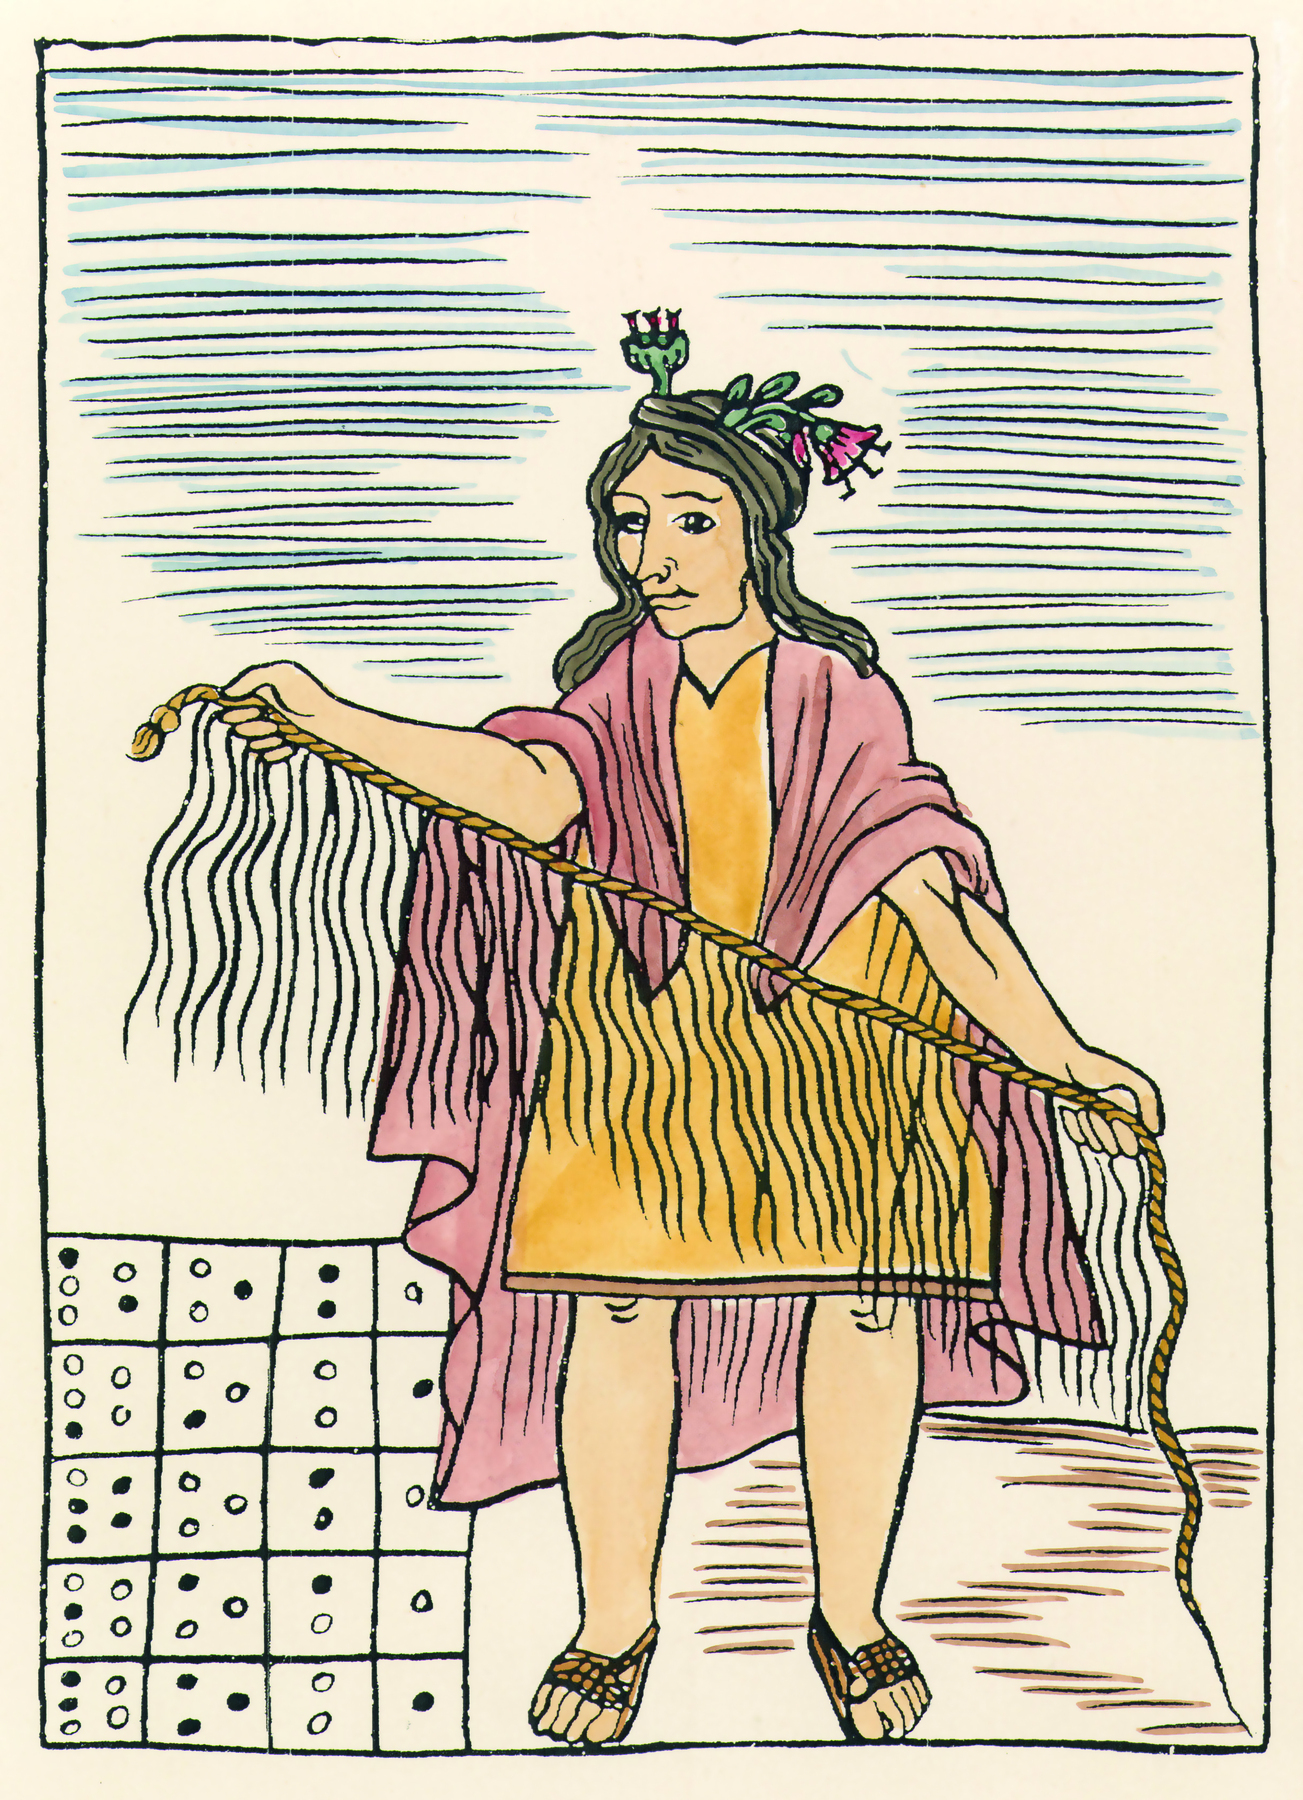 Xilogravura. Imagem de uma mulher de cabelos castanhos, longos e lisos, usando um vestido amarelo e uma capa vermelha, segurando uma corda com as mãos, da qual pendem vários cordões com nós.